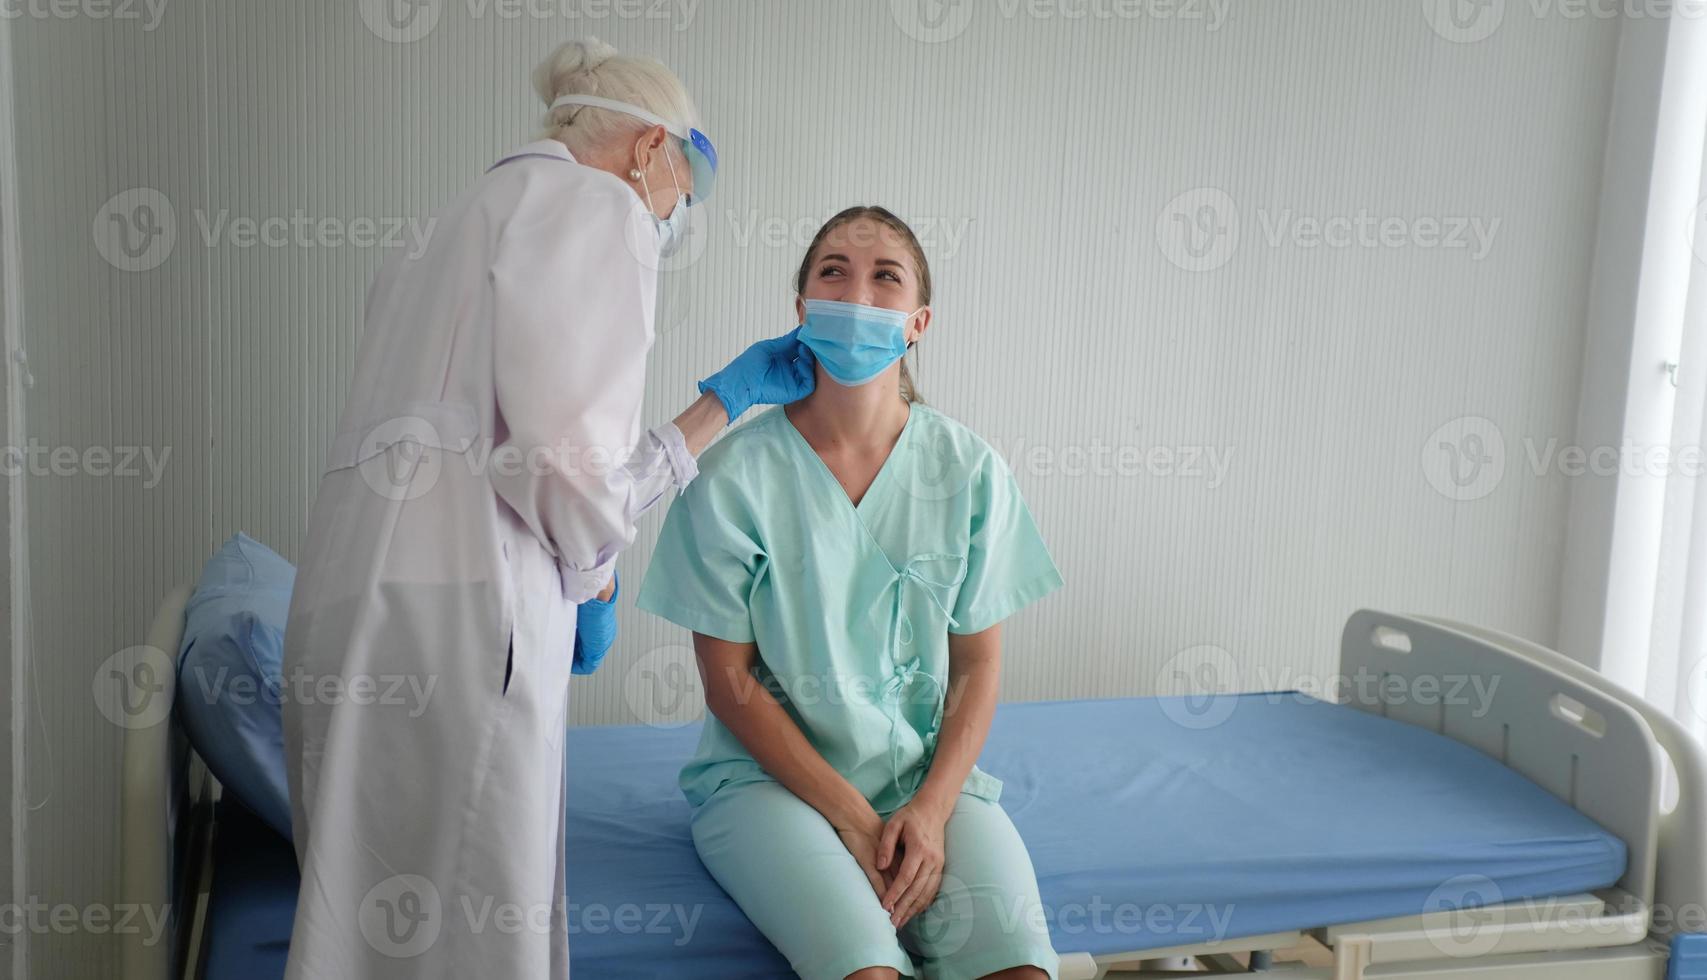 Coronavirusskydd under karantänen, kvinnlig läkare gör medicinsk undersökning till en kvinnlig patient. foto